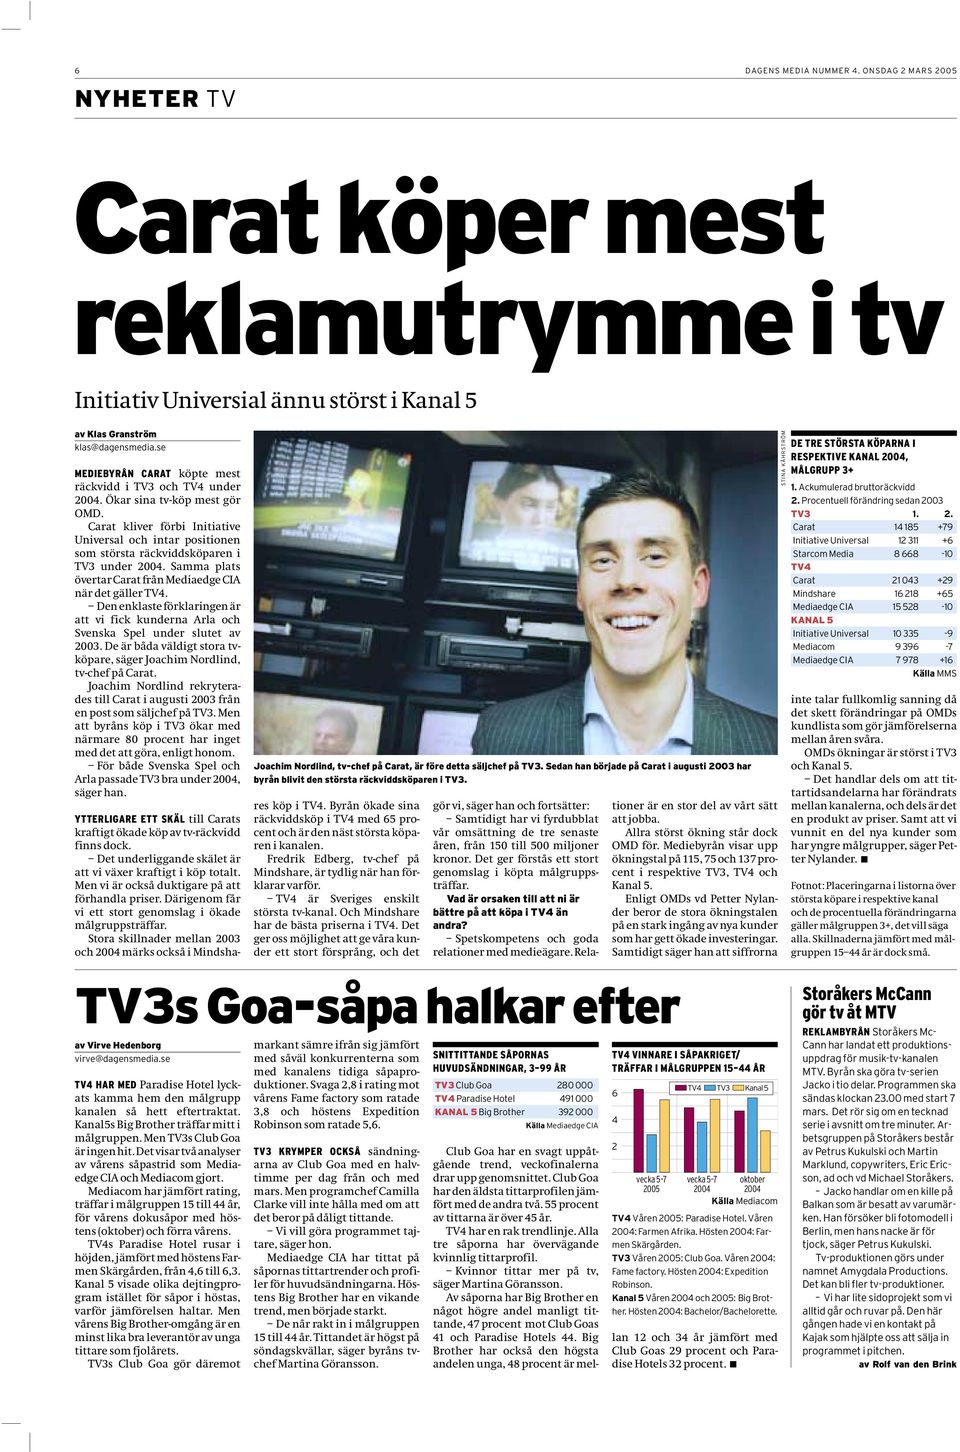 Carat kliver förbi Initiative Universal och intar positionen som största räckviddsköparen i TV3 under 2004. Samma plats övertar Carat från Mediaedge CIA när det gäller TV4.